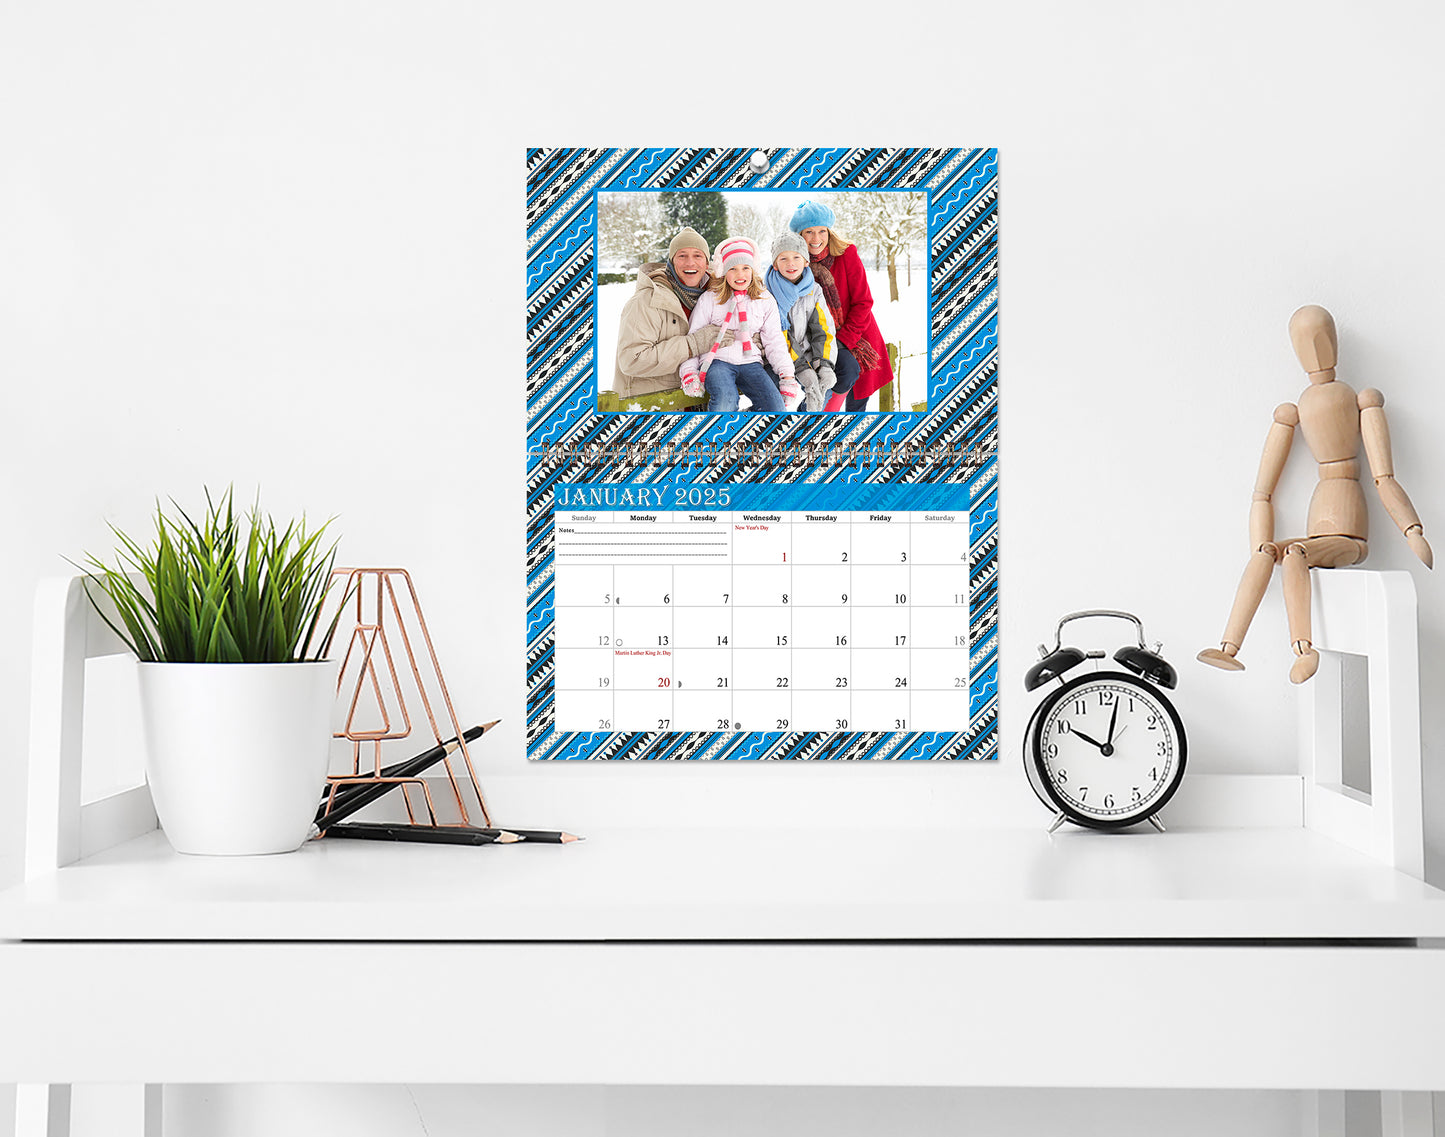 2025 Photo Frame Wall Spiral-bound Calendar (Add Your Own Photos) - 12 Months Desktop/Wall Calendar/Planner - (Edition #17)